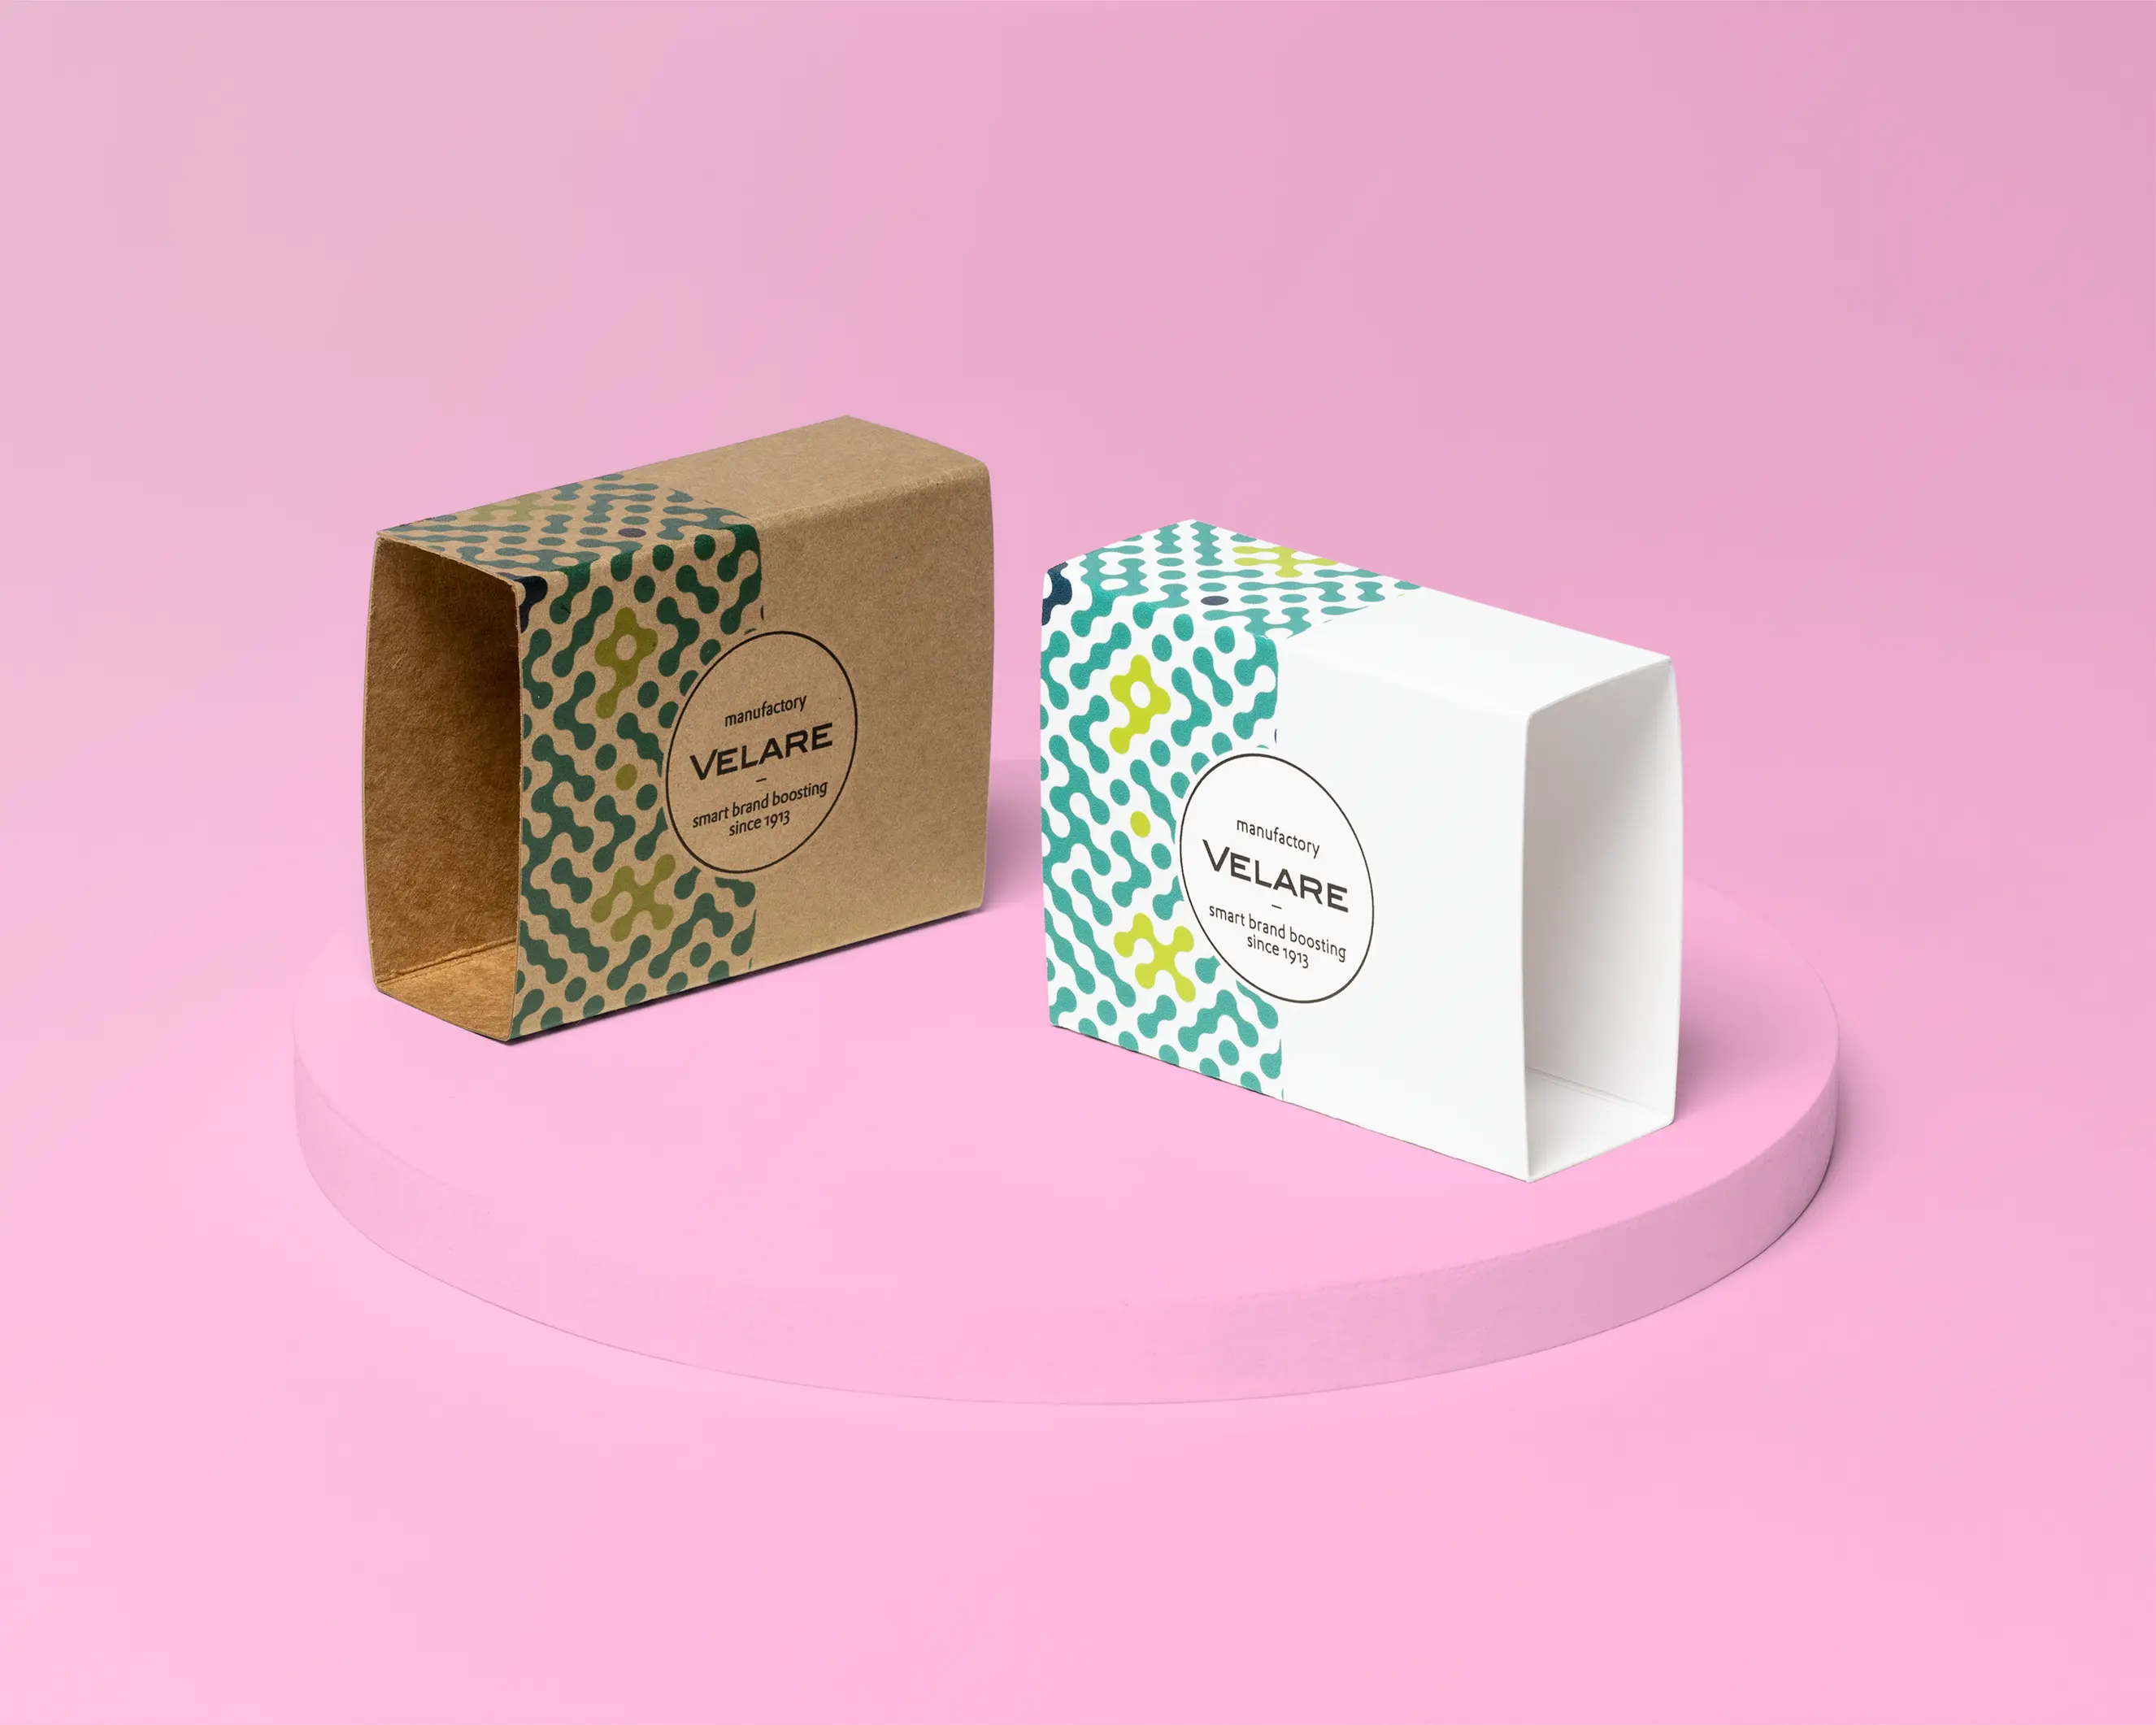 Schuber - Banderole, zwei Verpackungen, pinker Hintergrund